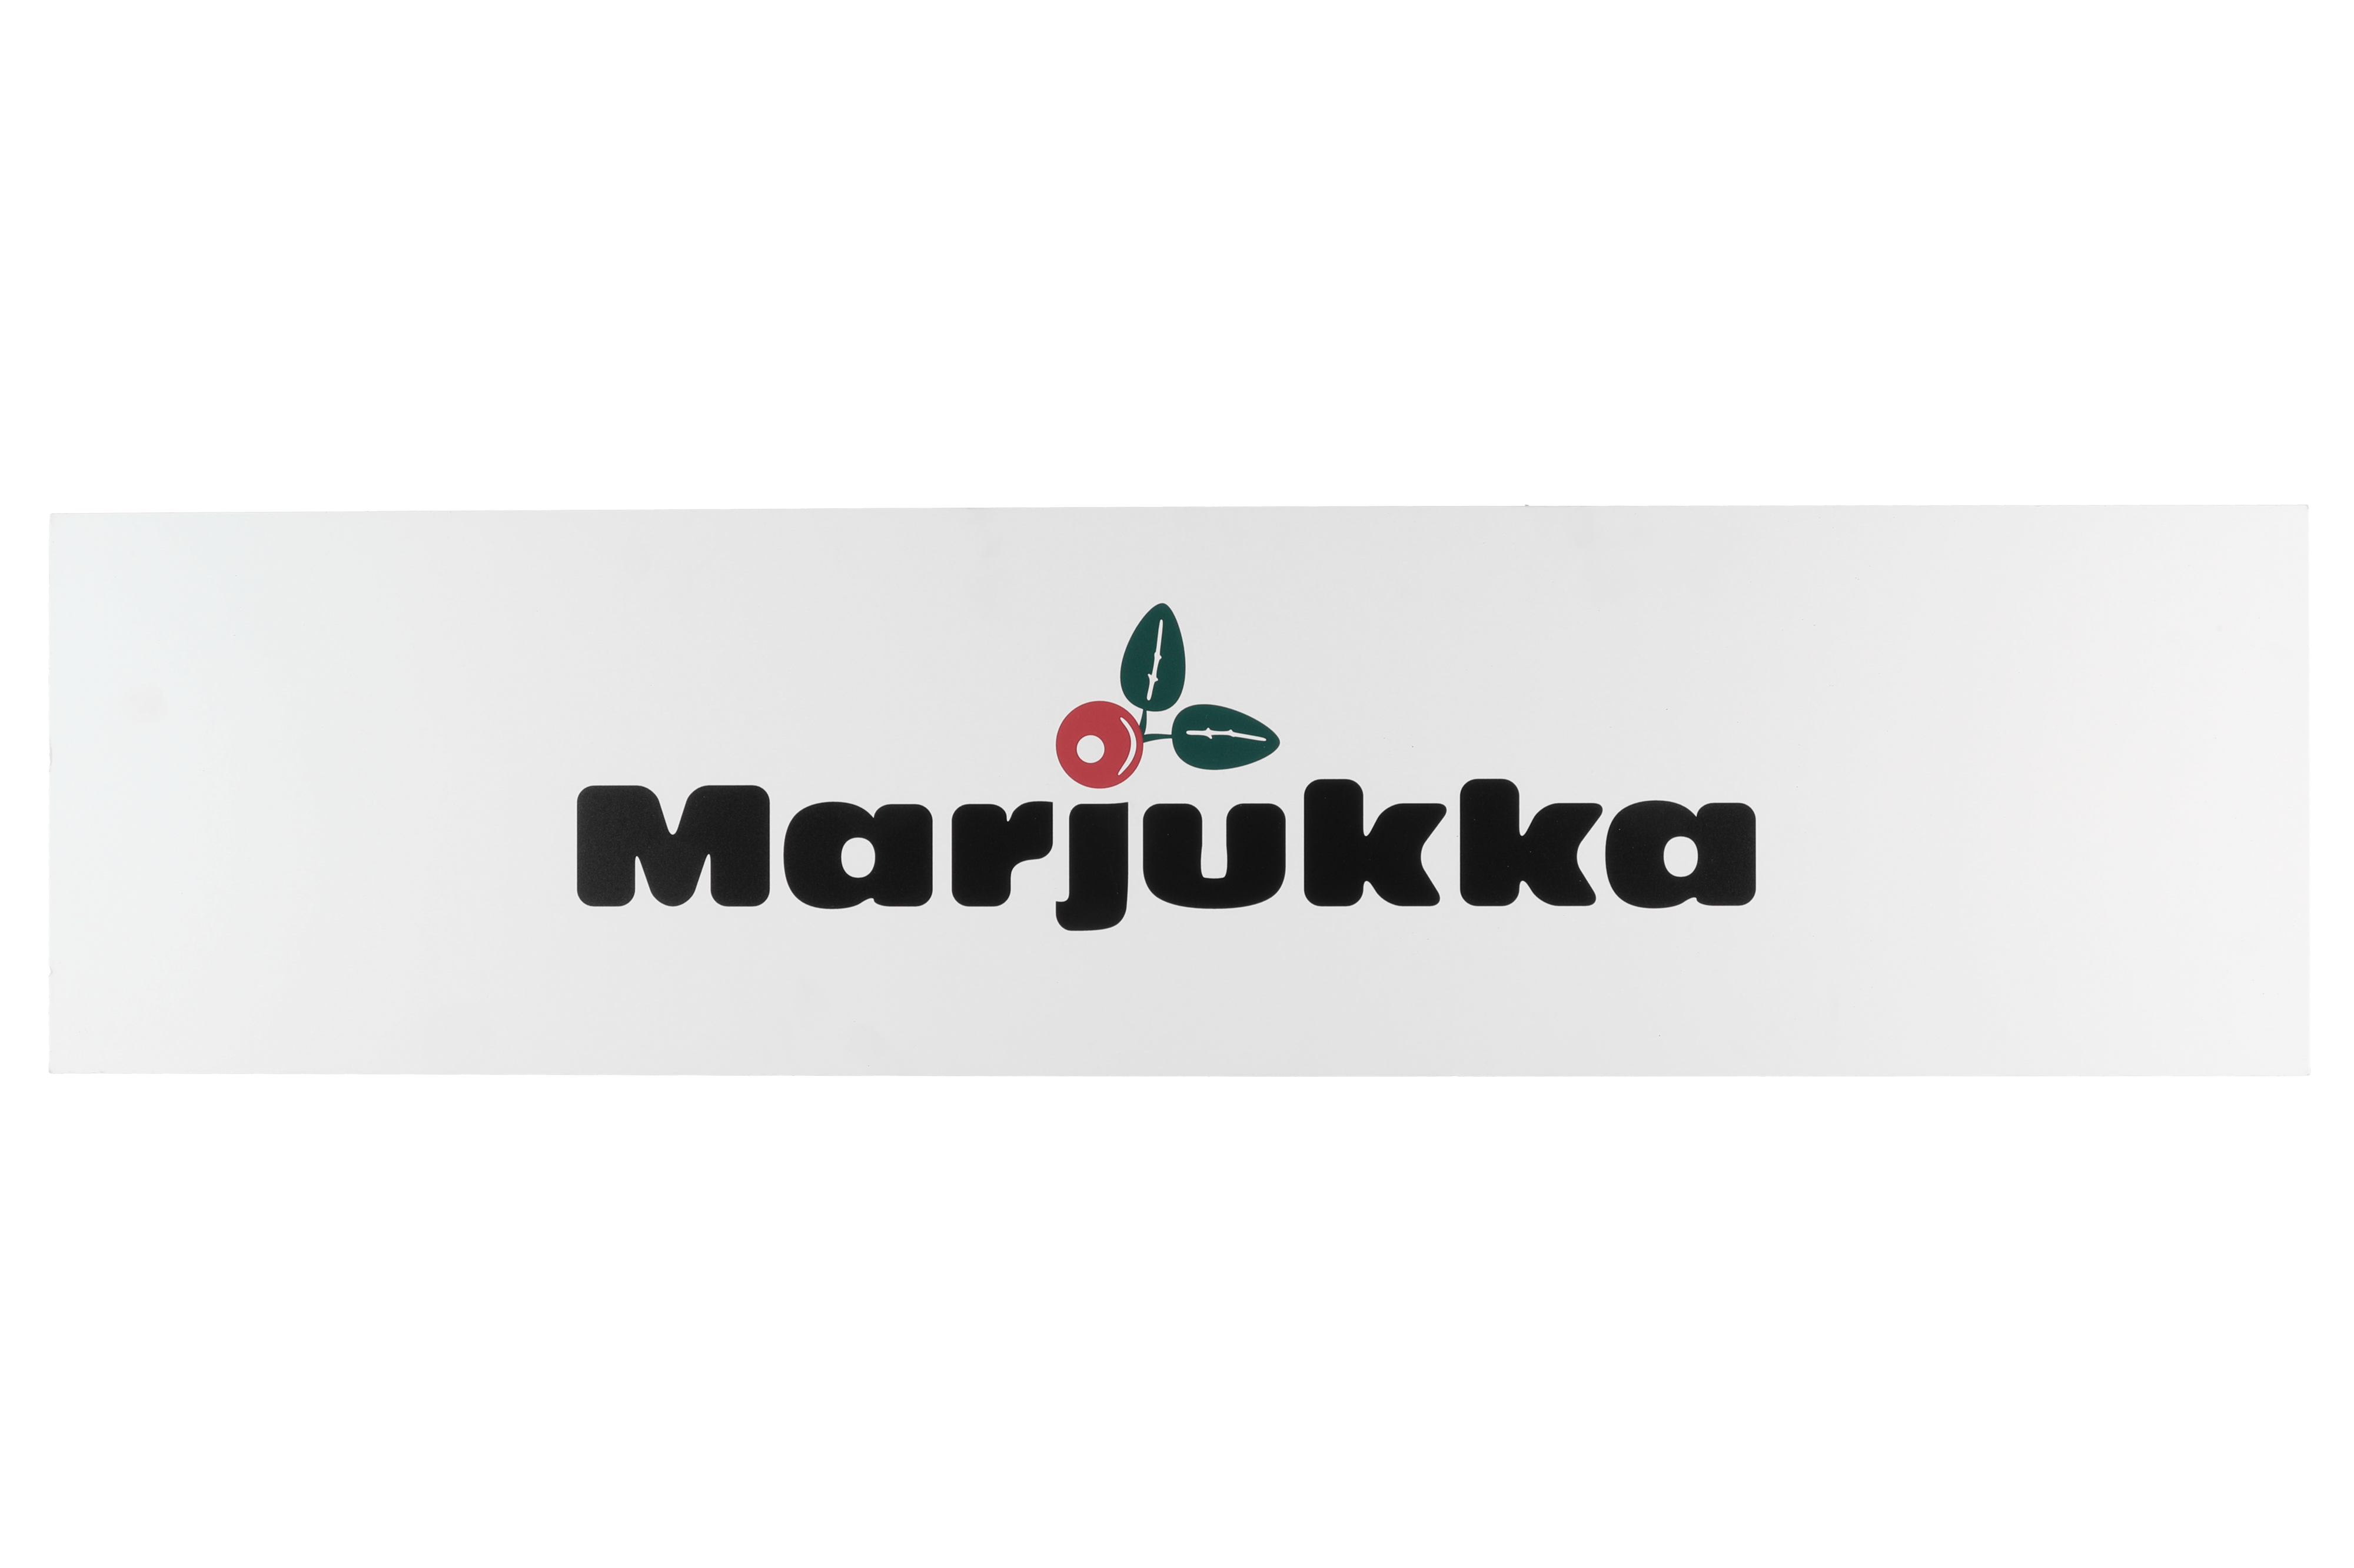 Marjukka